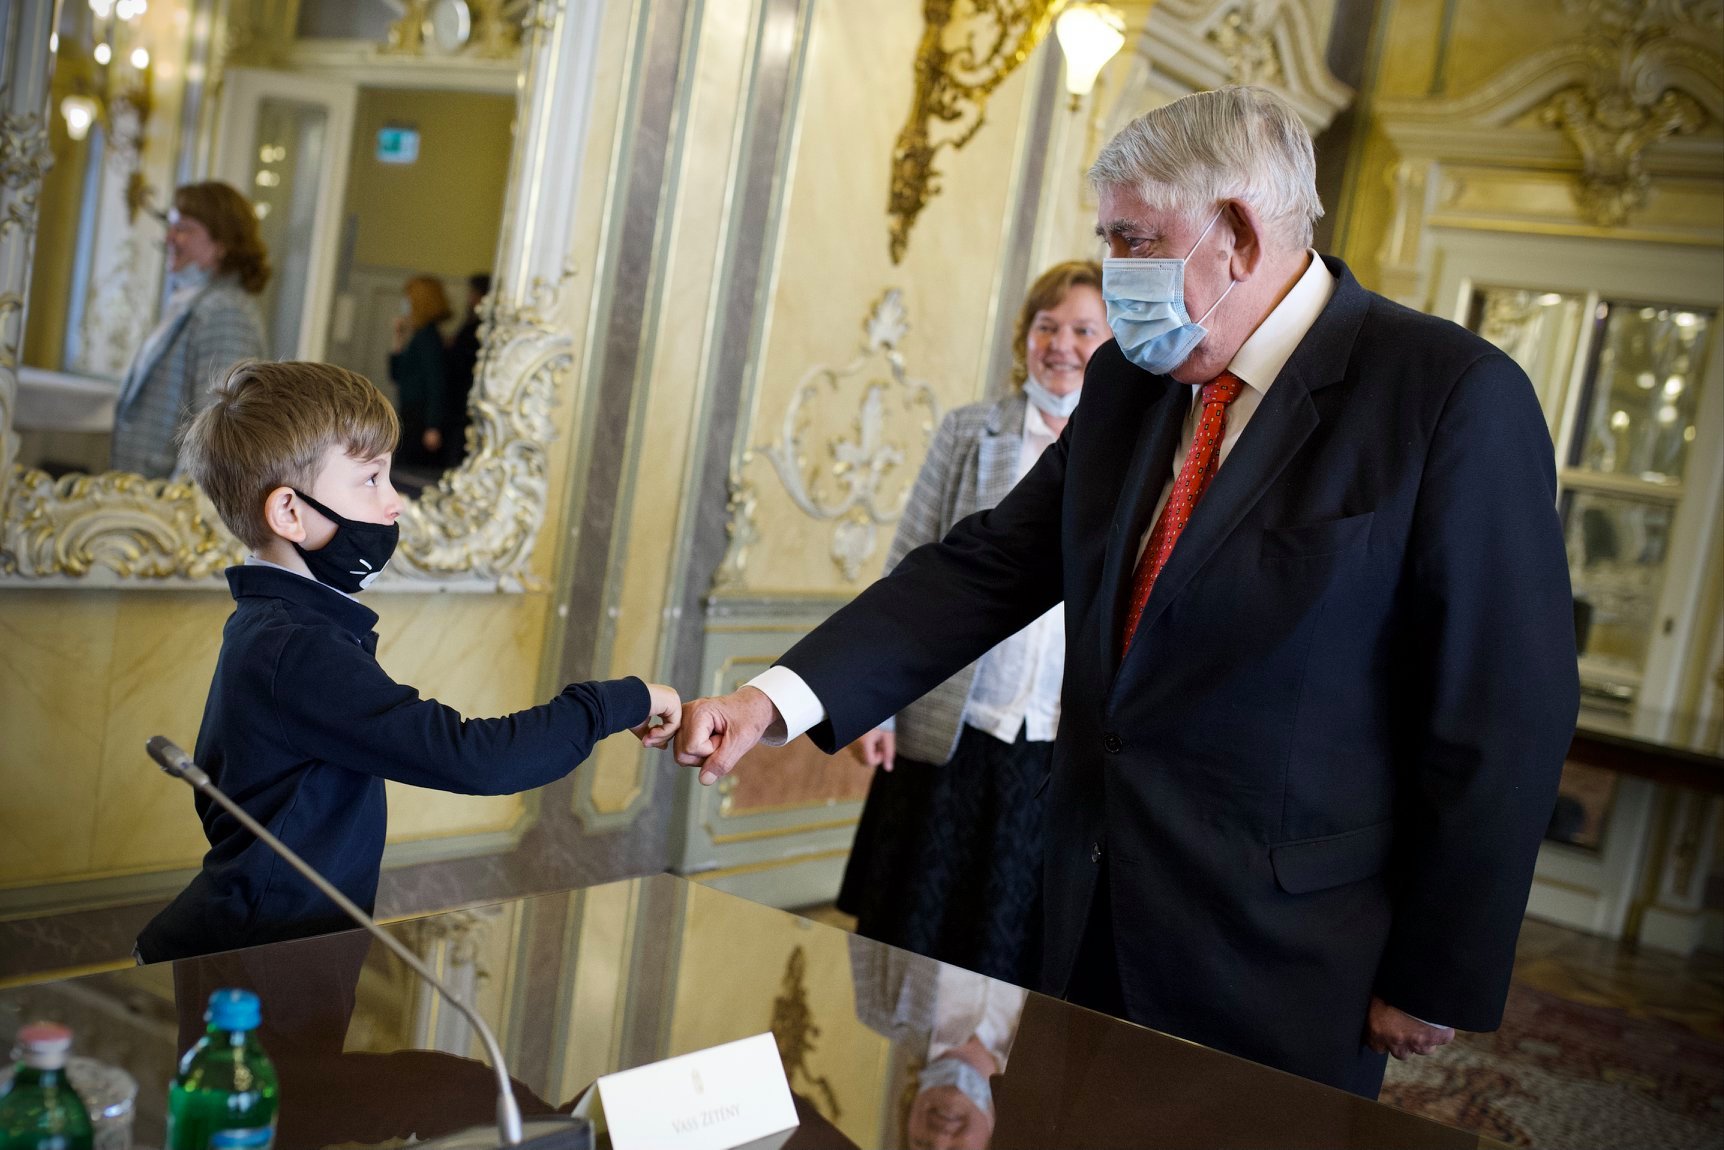 Prof. Dr. Kásler Miklós emberi erőforrások minisztere, gyermeknap alkalmából fogadott látogatókat a Parlamentben